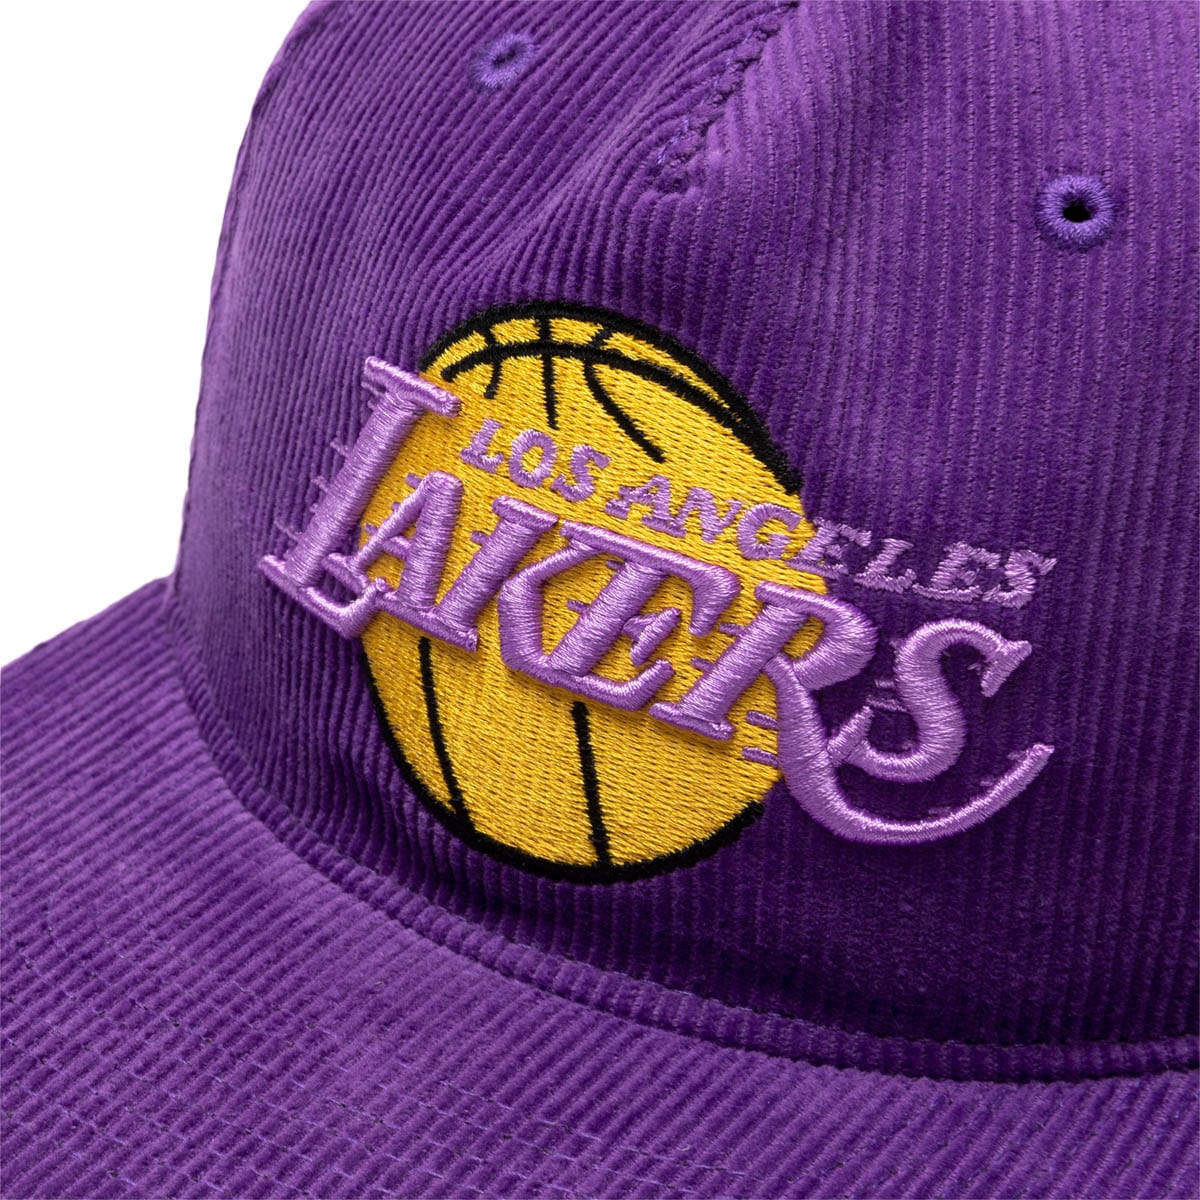 lakers snapback cap